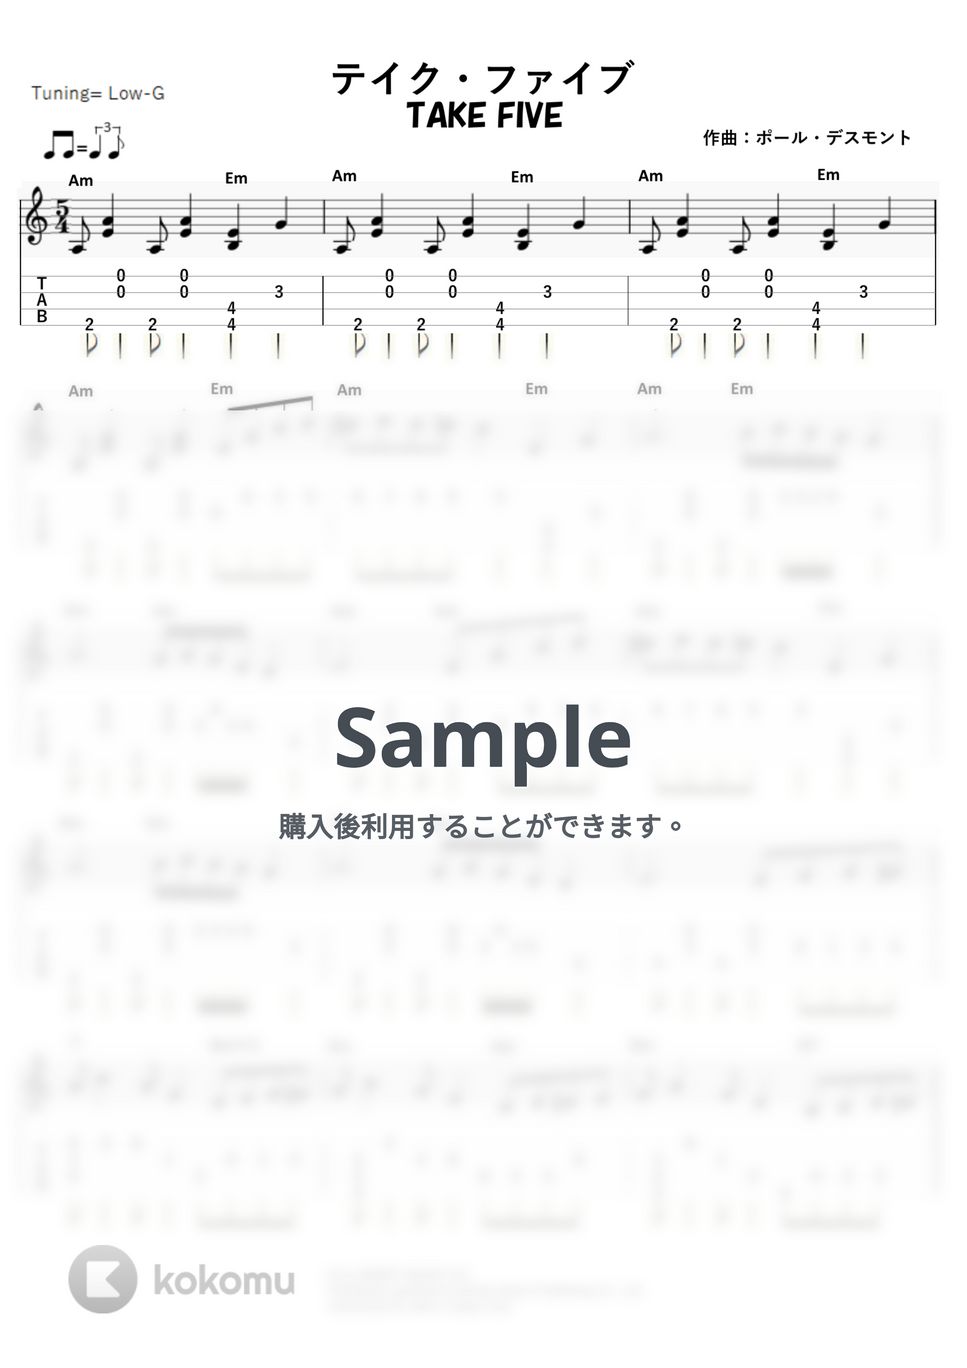 ポール・デスモント - テイク・ファイブ (ｳｸﾚﾚｿﾛ / Low-G / 中級) by ukulelepapa